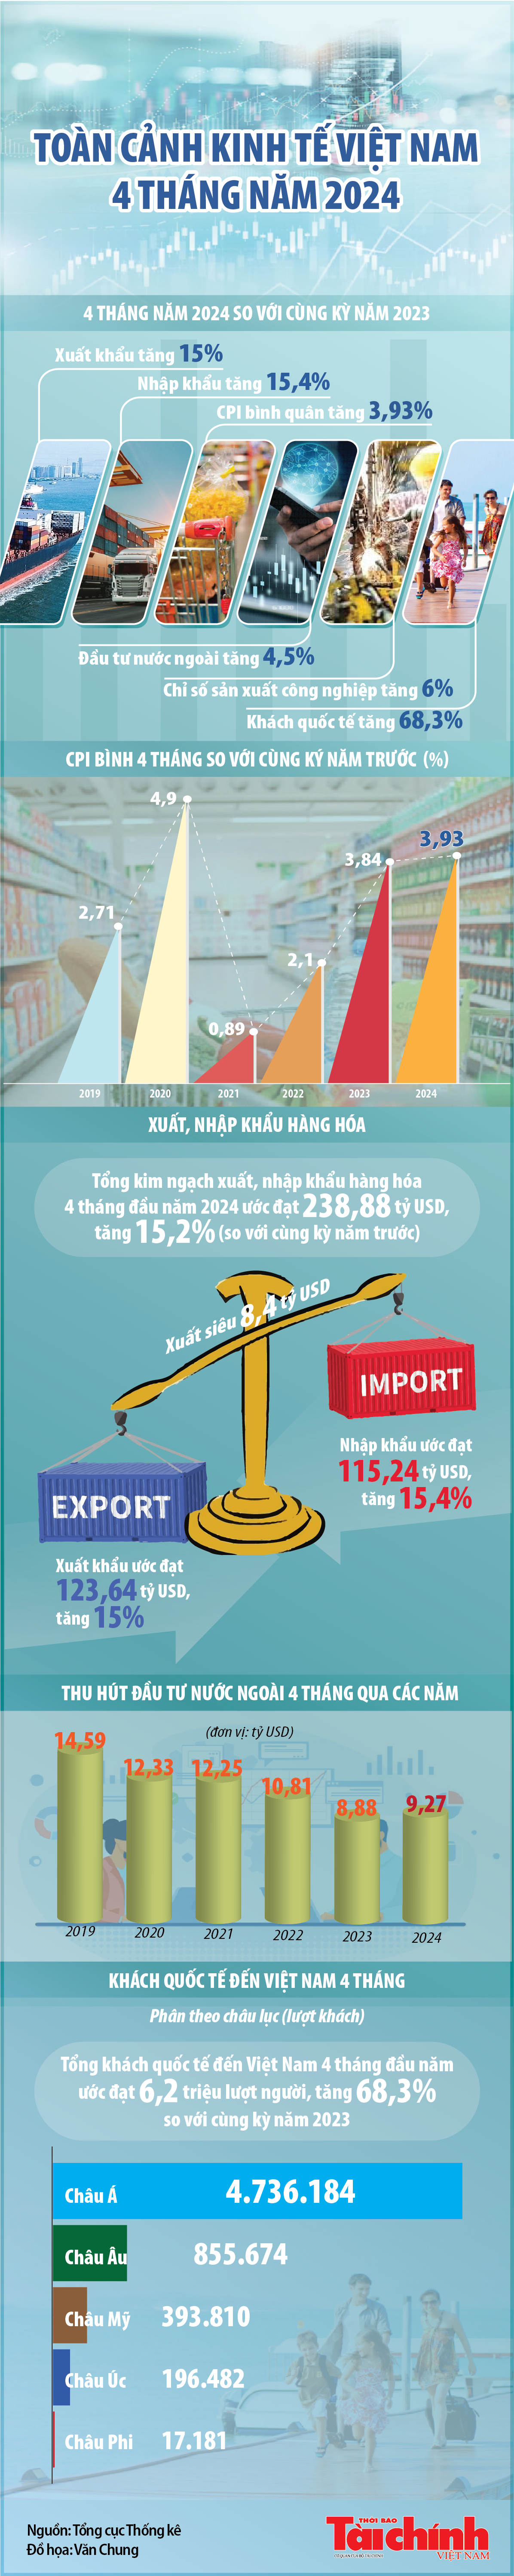 Toàn cảnh kinh tế Việt Nam 4 tháng năm 2024 qua các con số